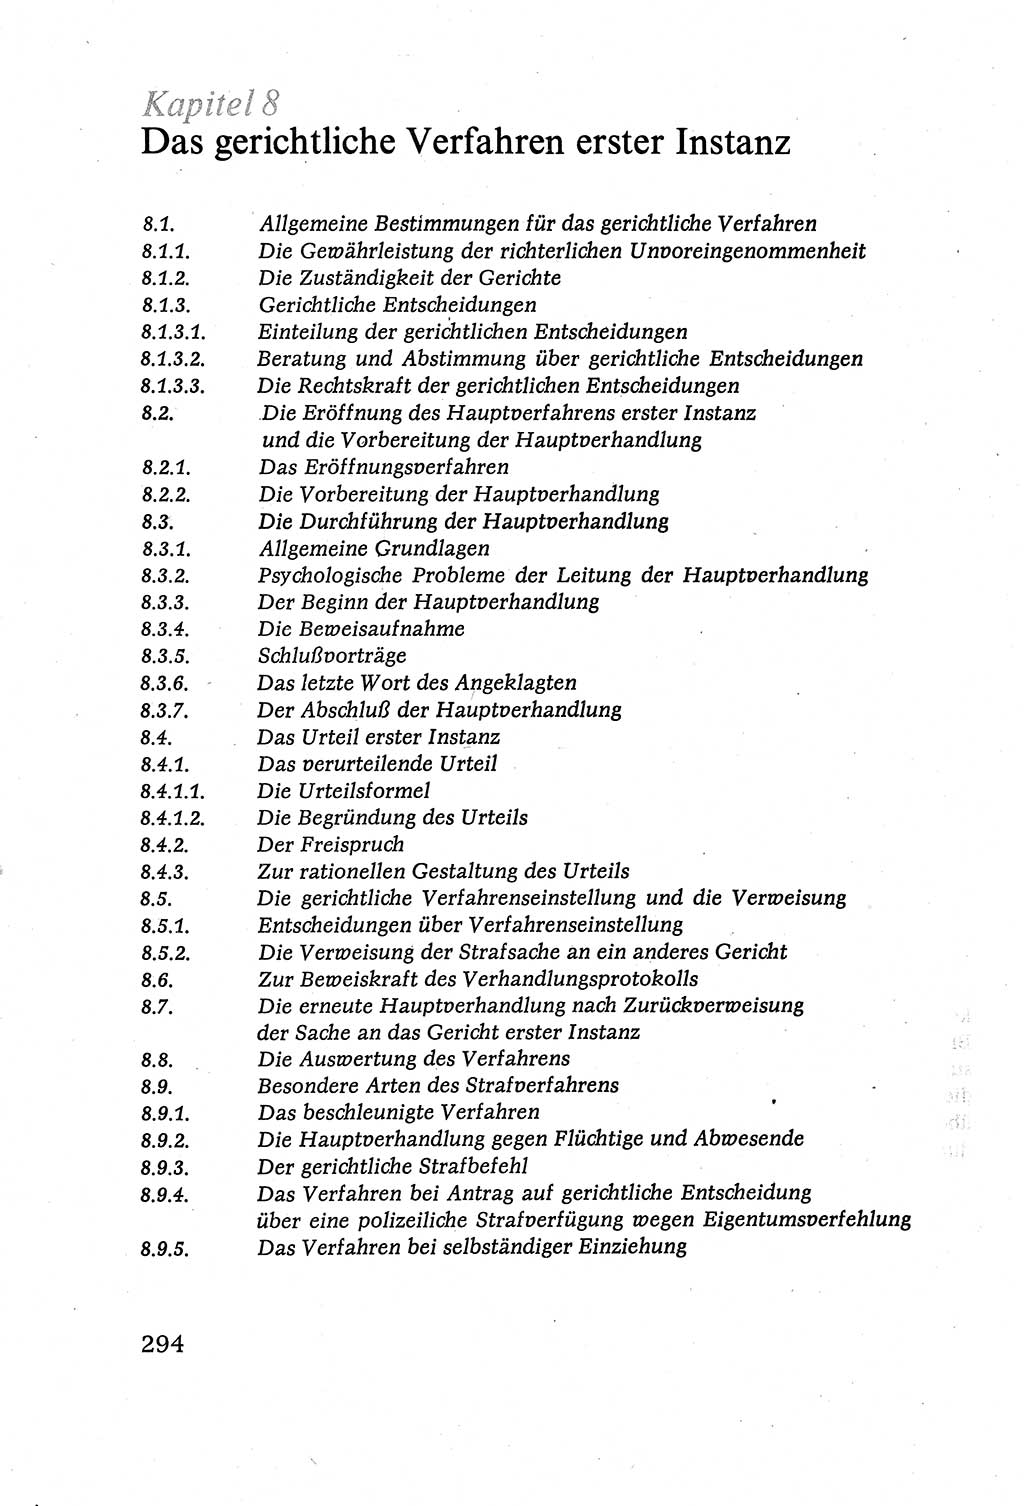 Strafverfahrensrecht [Deutsche Demokratische Republik (DDR)], Lehrbuch 1977, Seite 294 (Strafverf.-R. DDR Lb. 1977, S. 294)